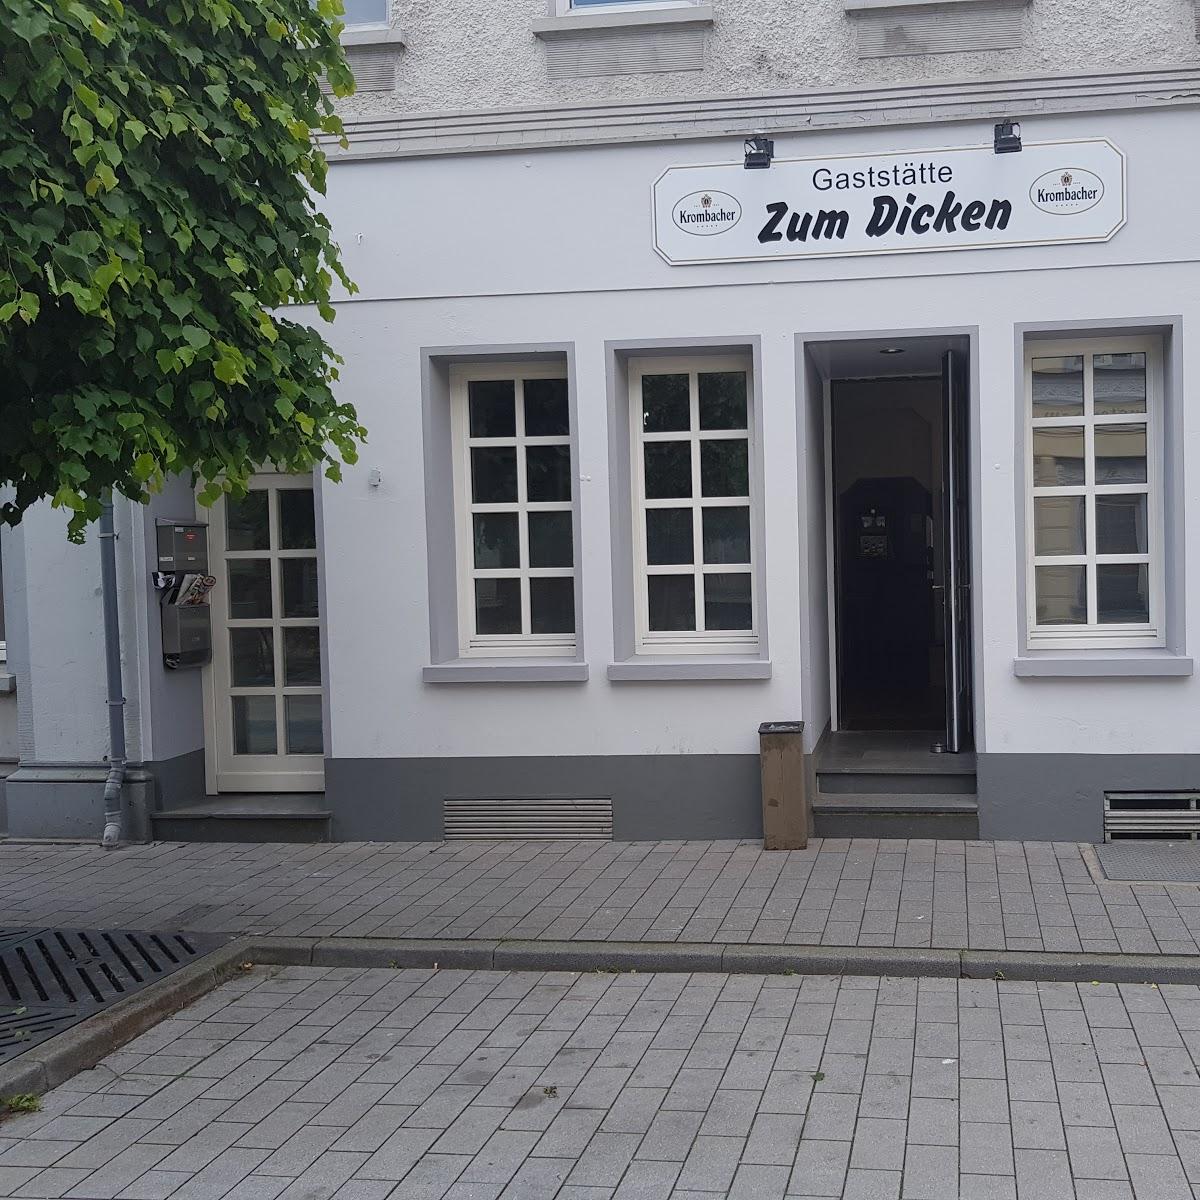 Restaurant "Gaststätte zum Dicken" in Rheinberg